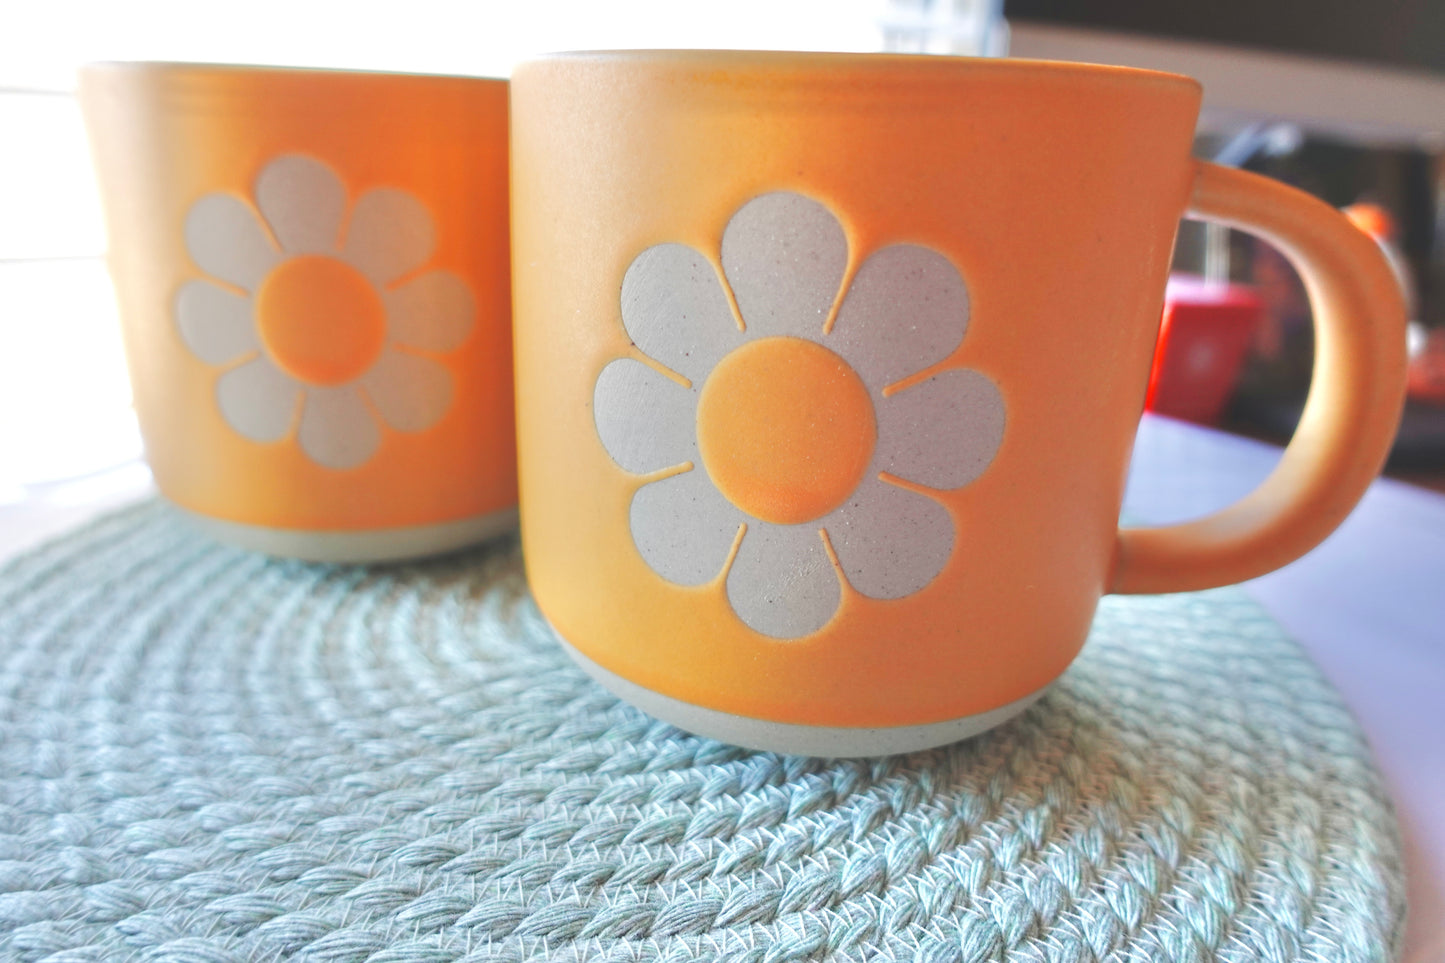 Retro Flower Ceramic Mug